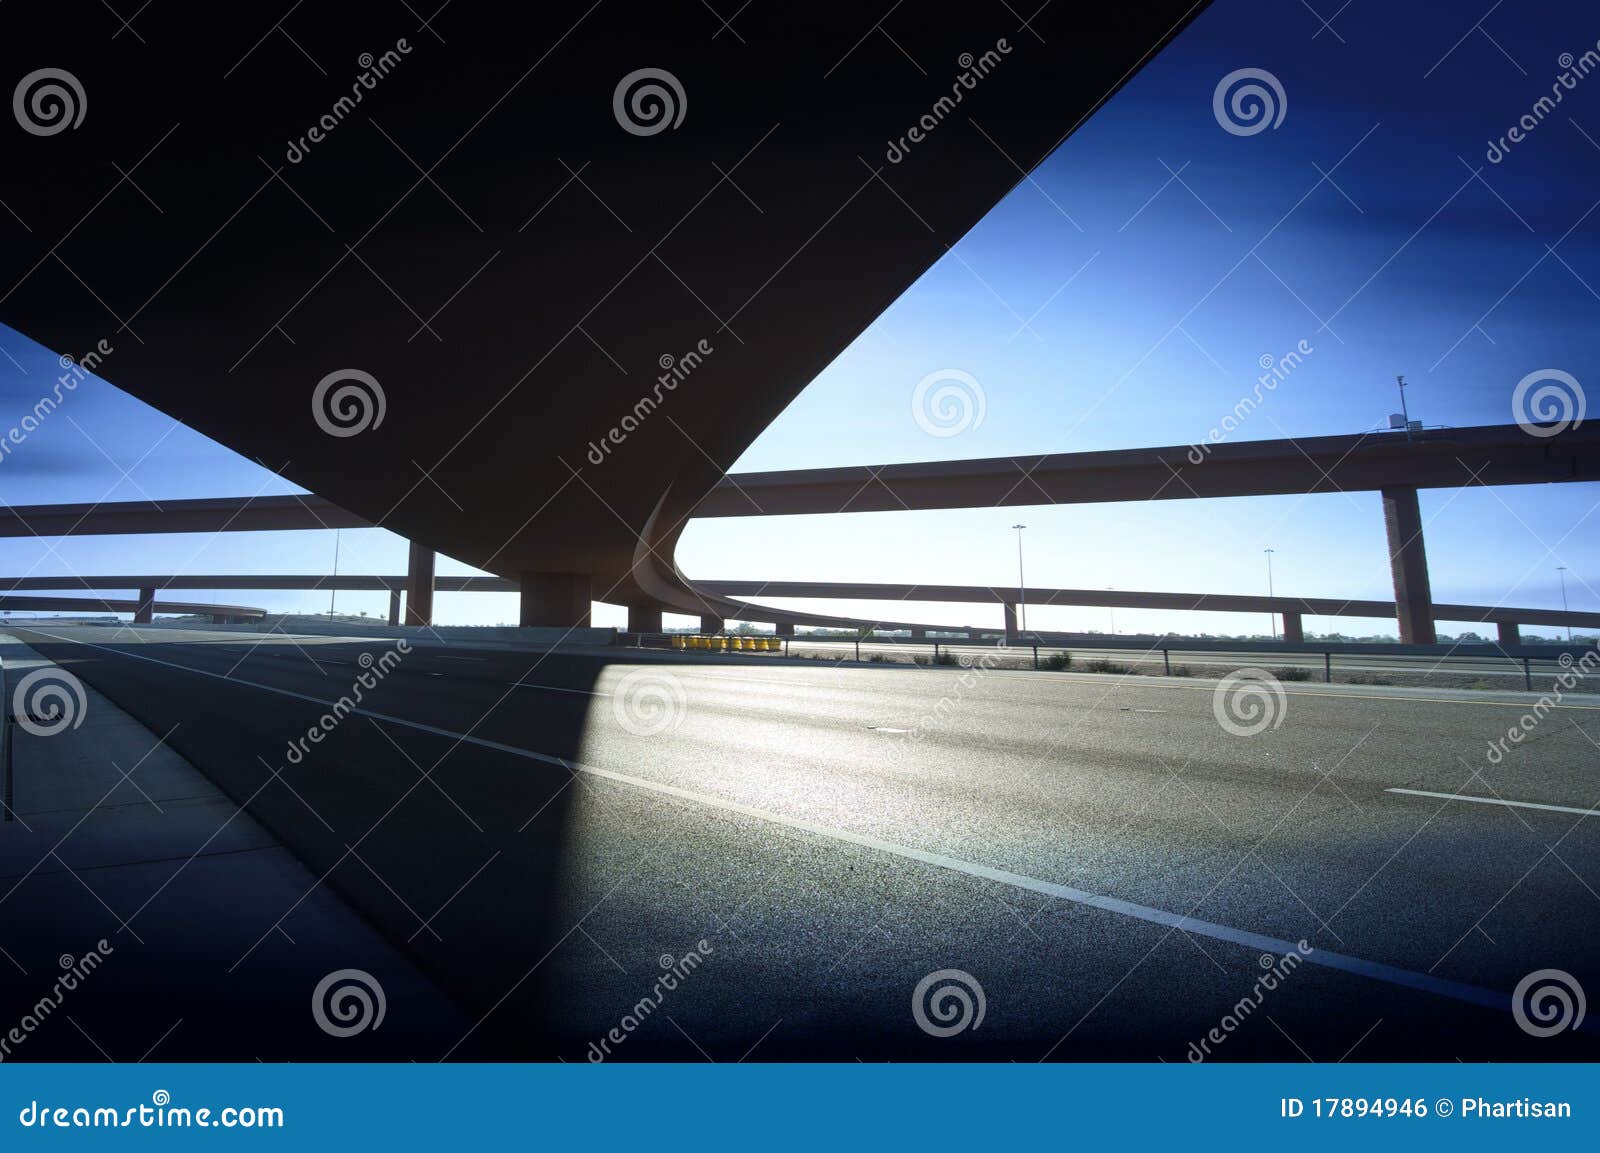 highway motorway road intersection